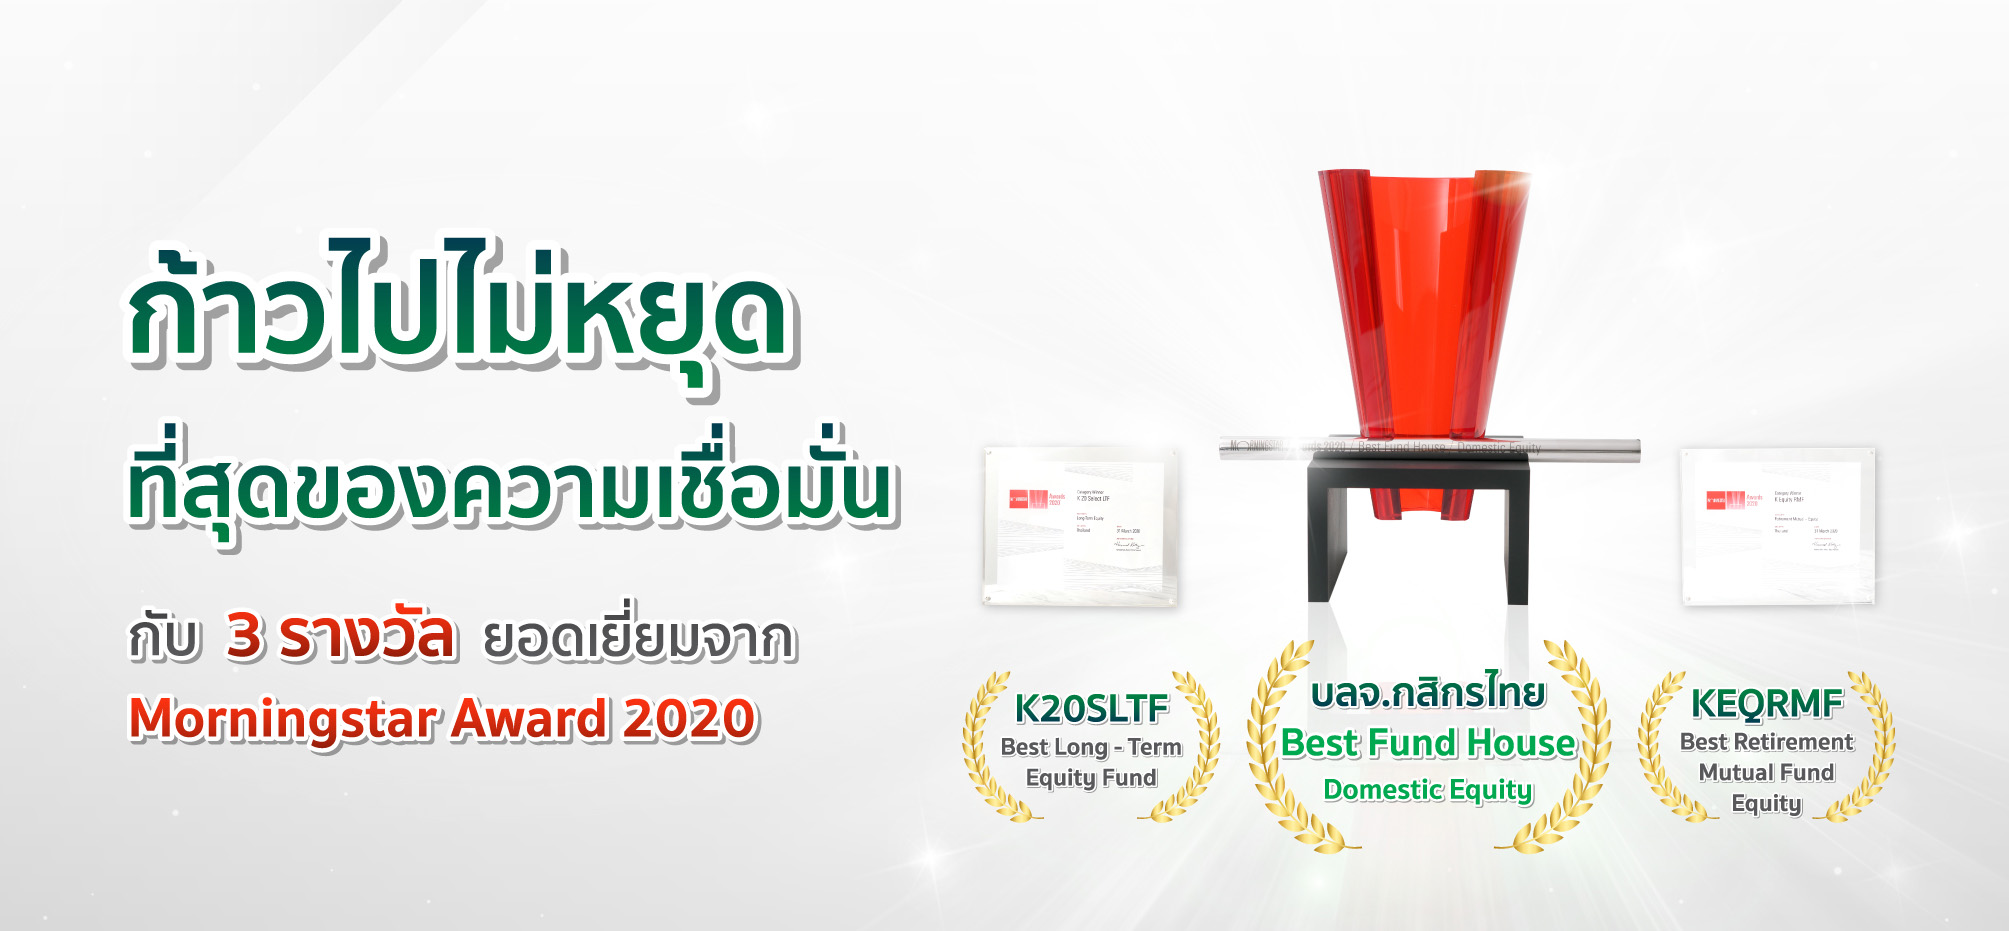 ลงทุนหุ้นไทย เลือกกสิกรไทย บลจ.ยอดเยี่ยมจาก Morningstar 2020
        และมั่นใจอีกขั้นกับ รางวัลกองทุนลดหย่อนภาษียอดเยี่ยม ทั้ง LTF และ RMF